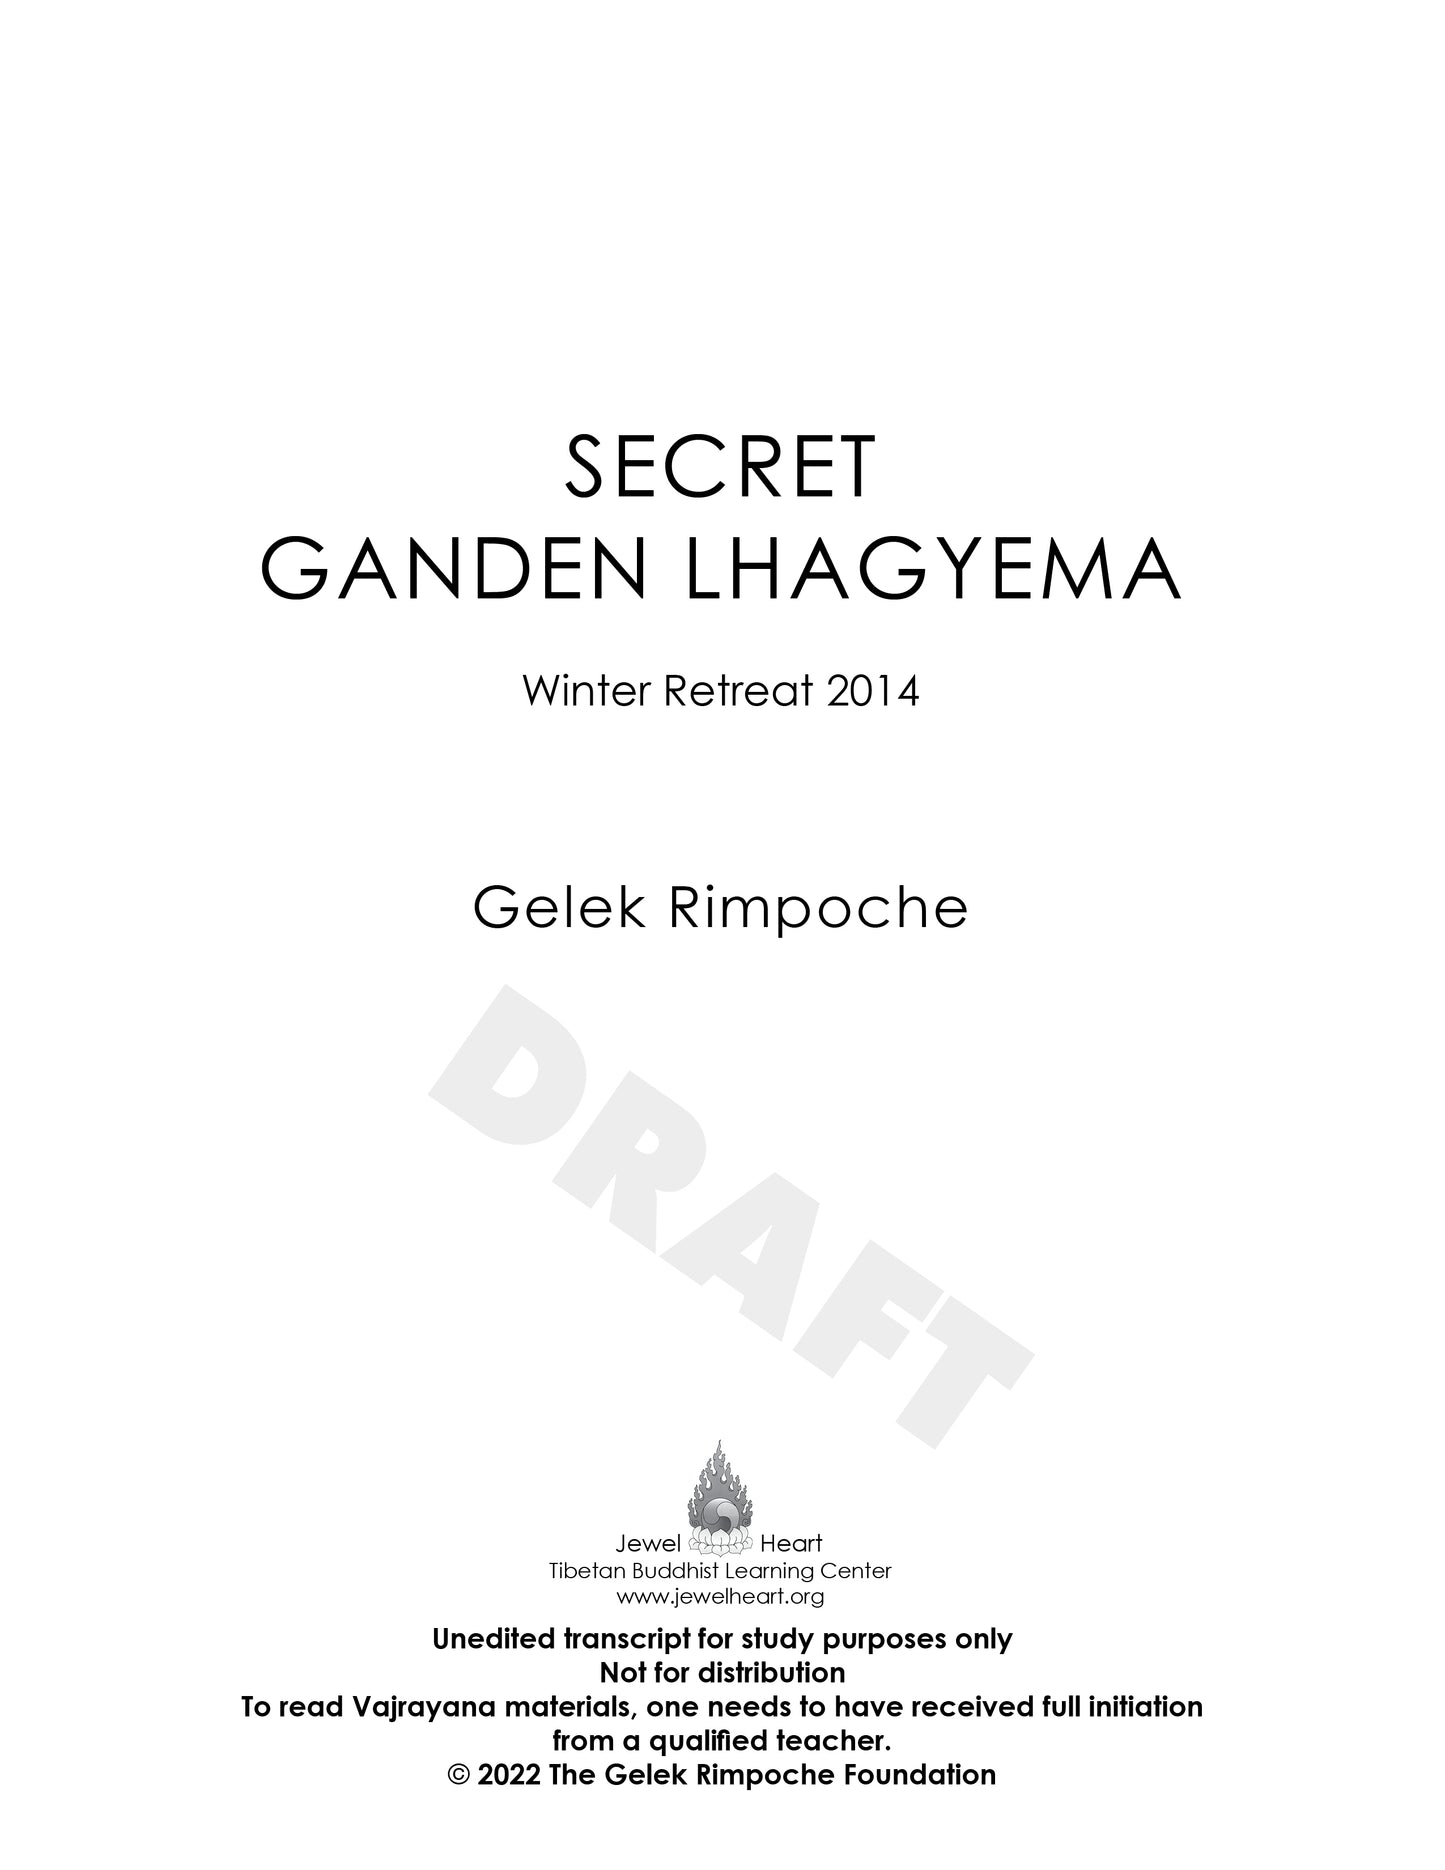 Secret Ganden Lhagyema - Winter Retreat 2014